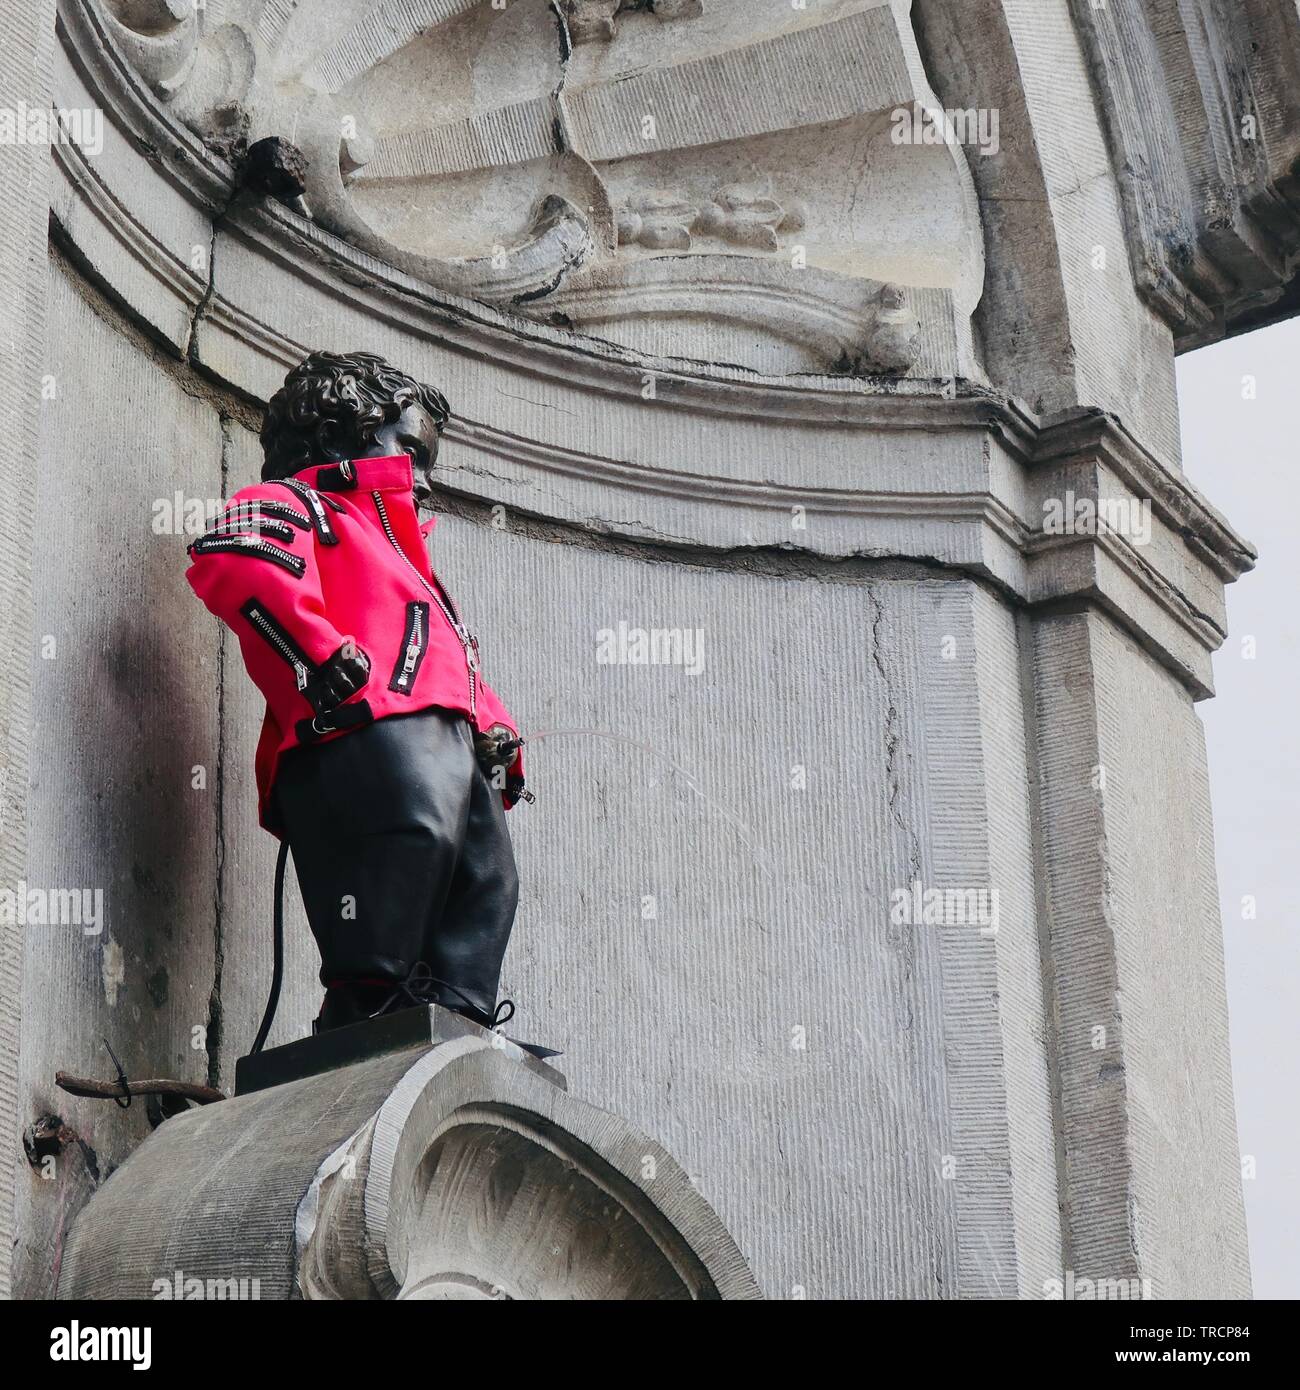 Bruxelles, Belgique - Mai 2019 : Mannekin pis dans une veste à glissière rose. Banque D'Images